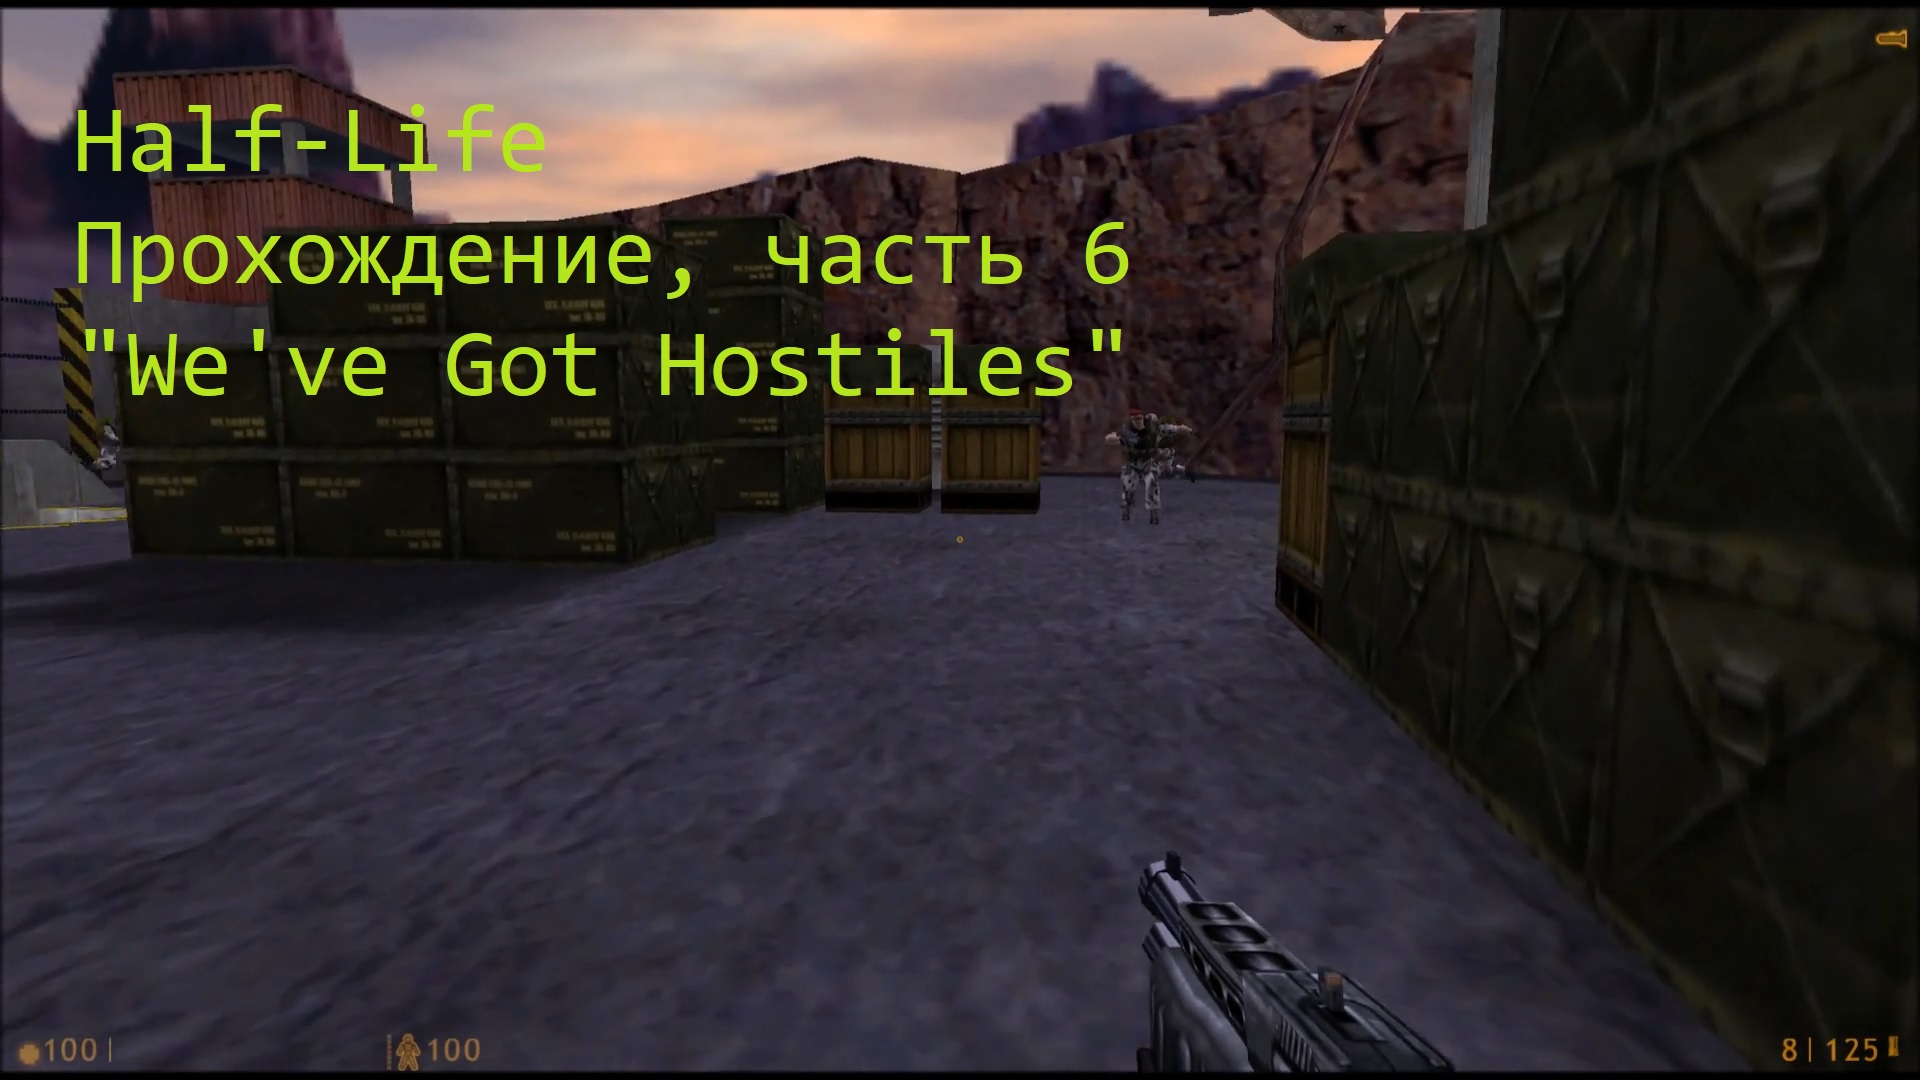 Half-Life, Прохождение, часть 6 - "We've Got Hostiles"